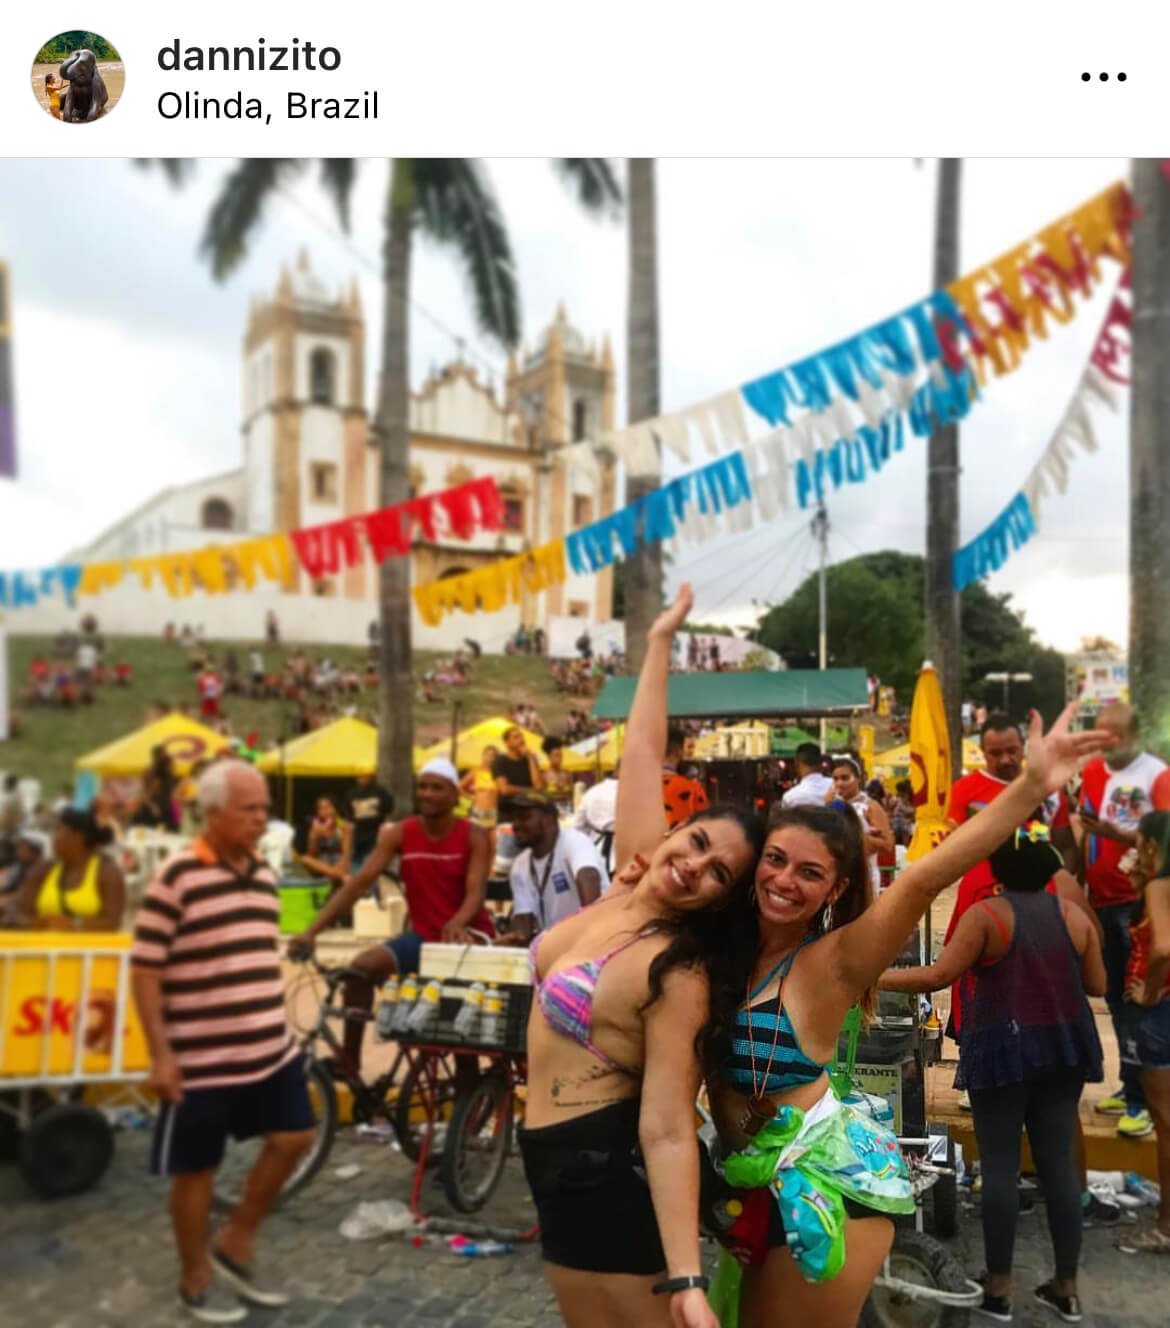 Olinda, the carnival in Brazil